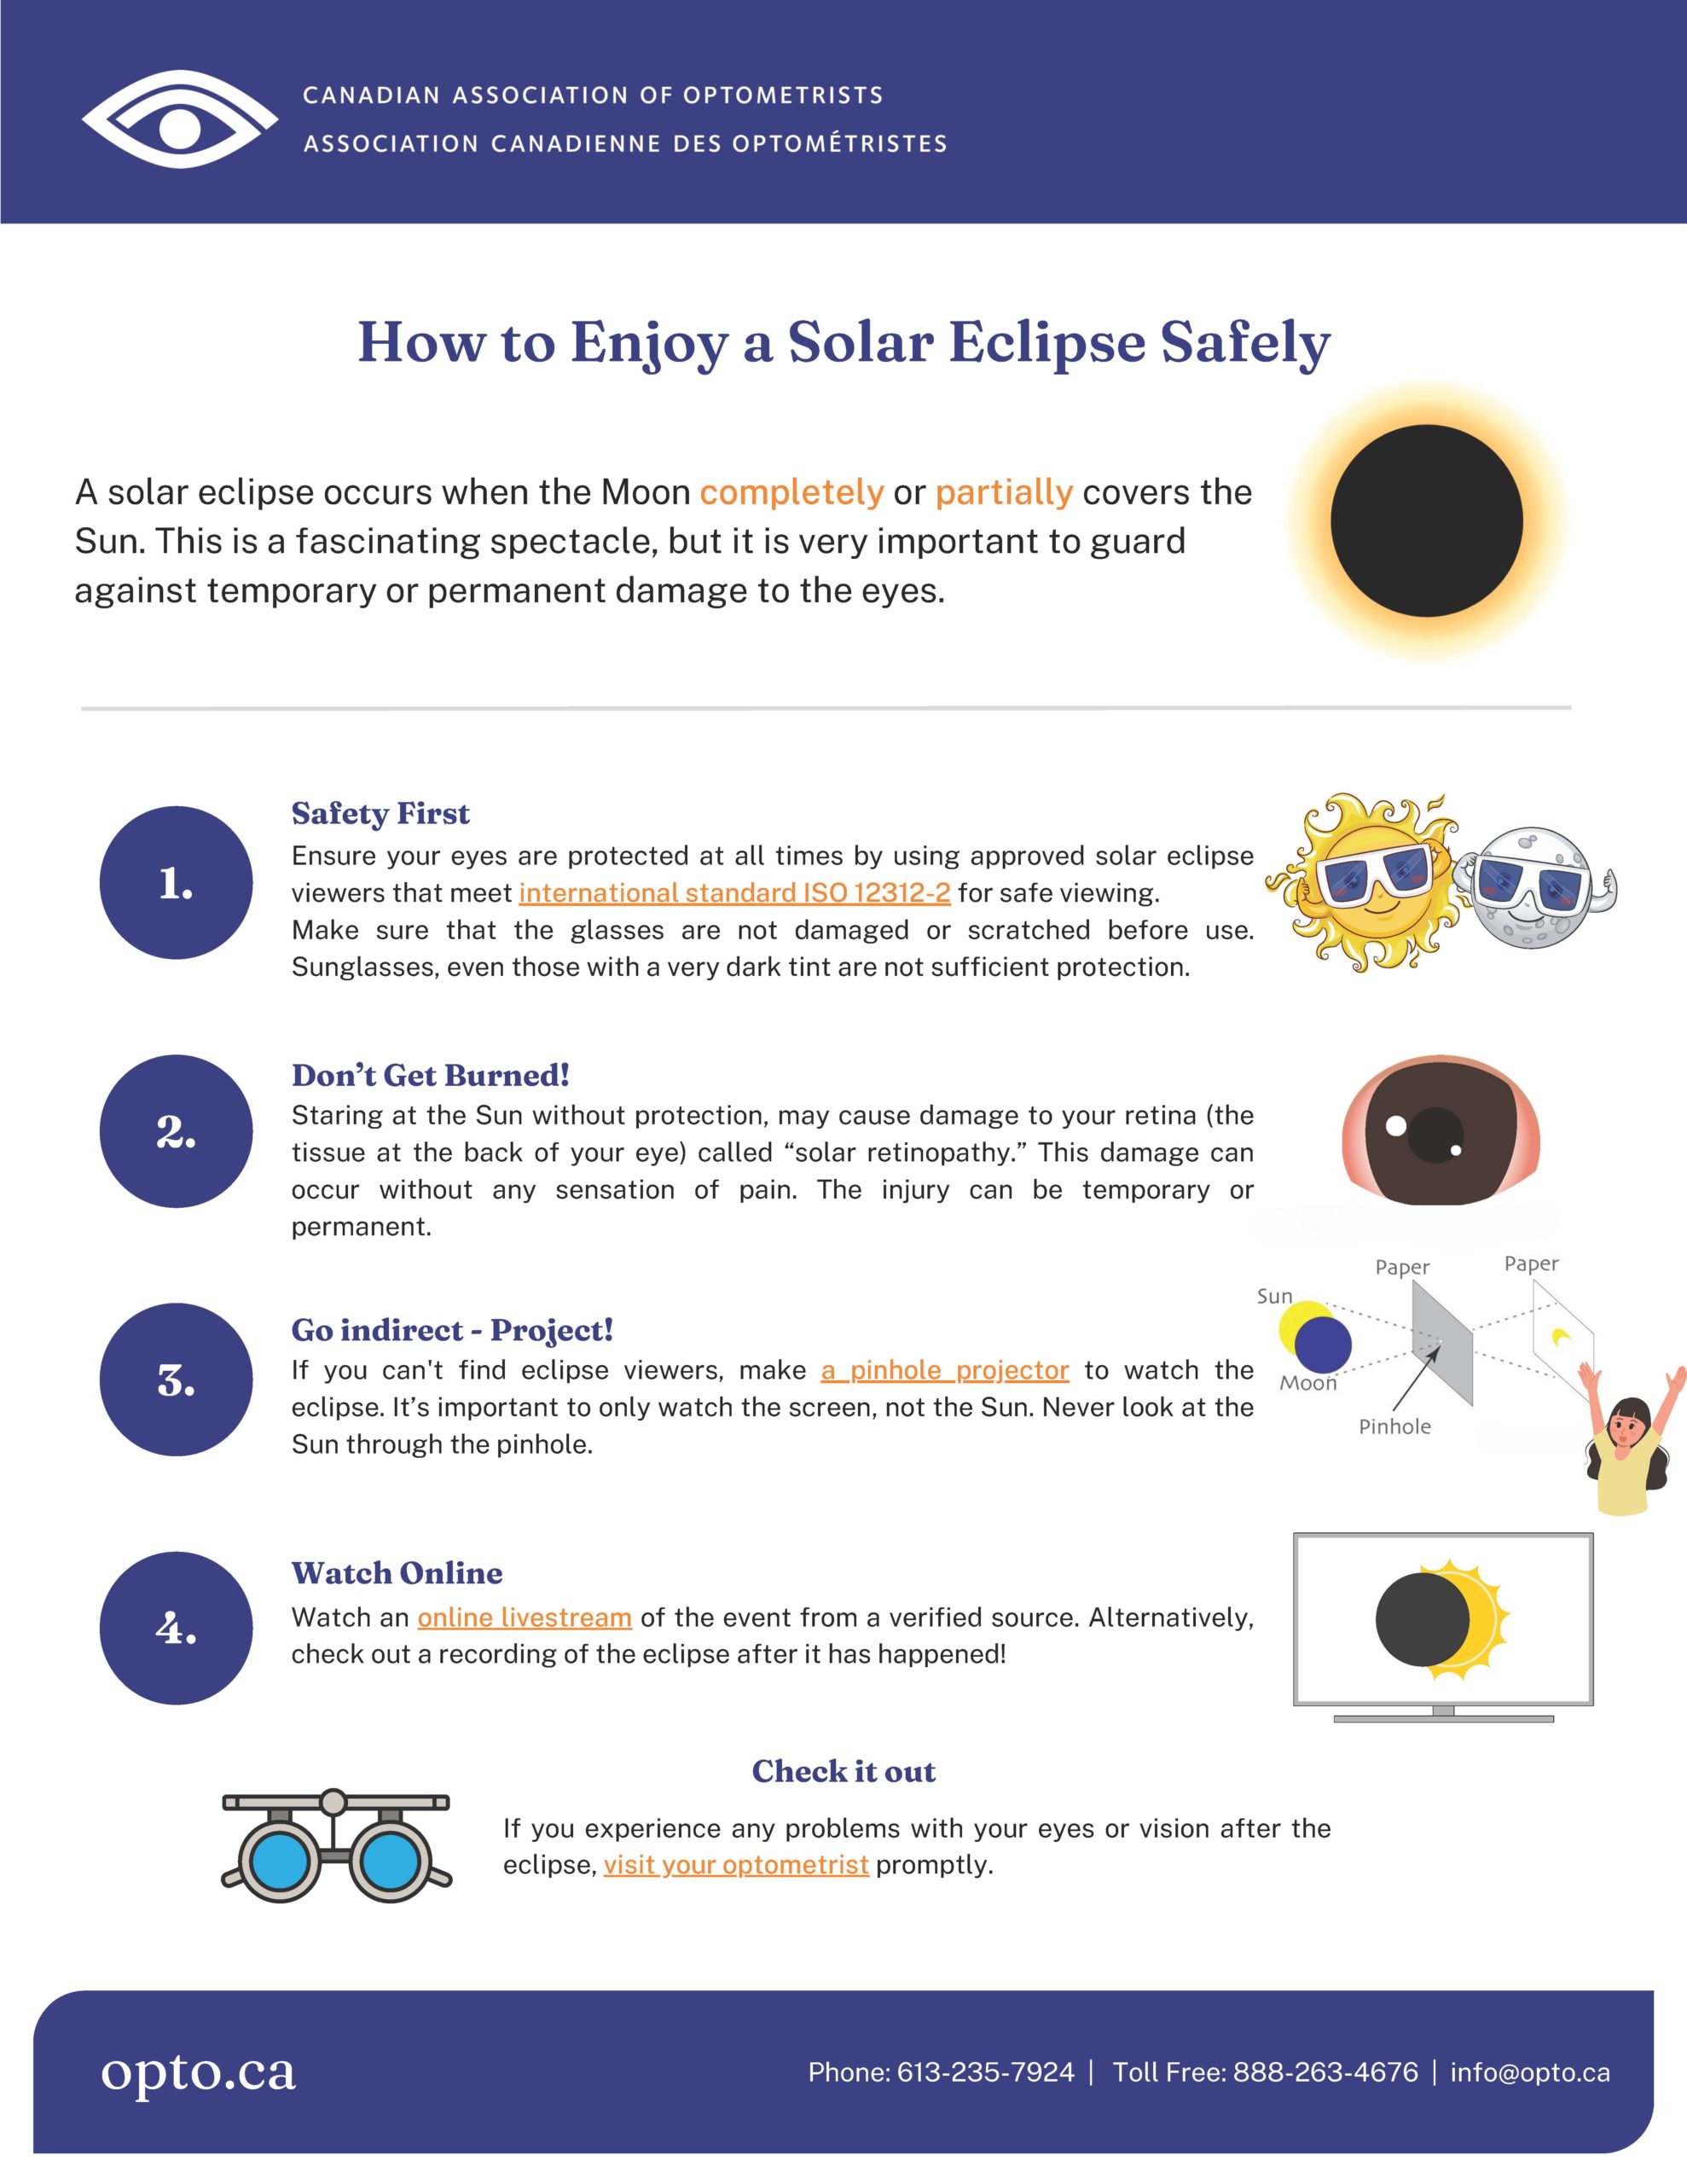 Eclipse Safety